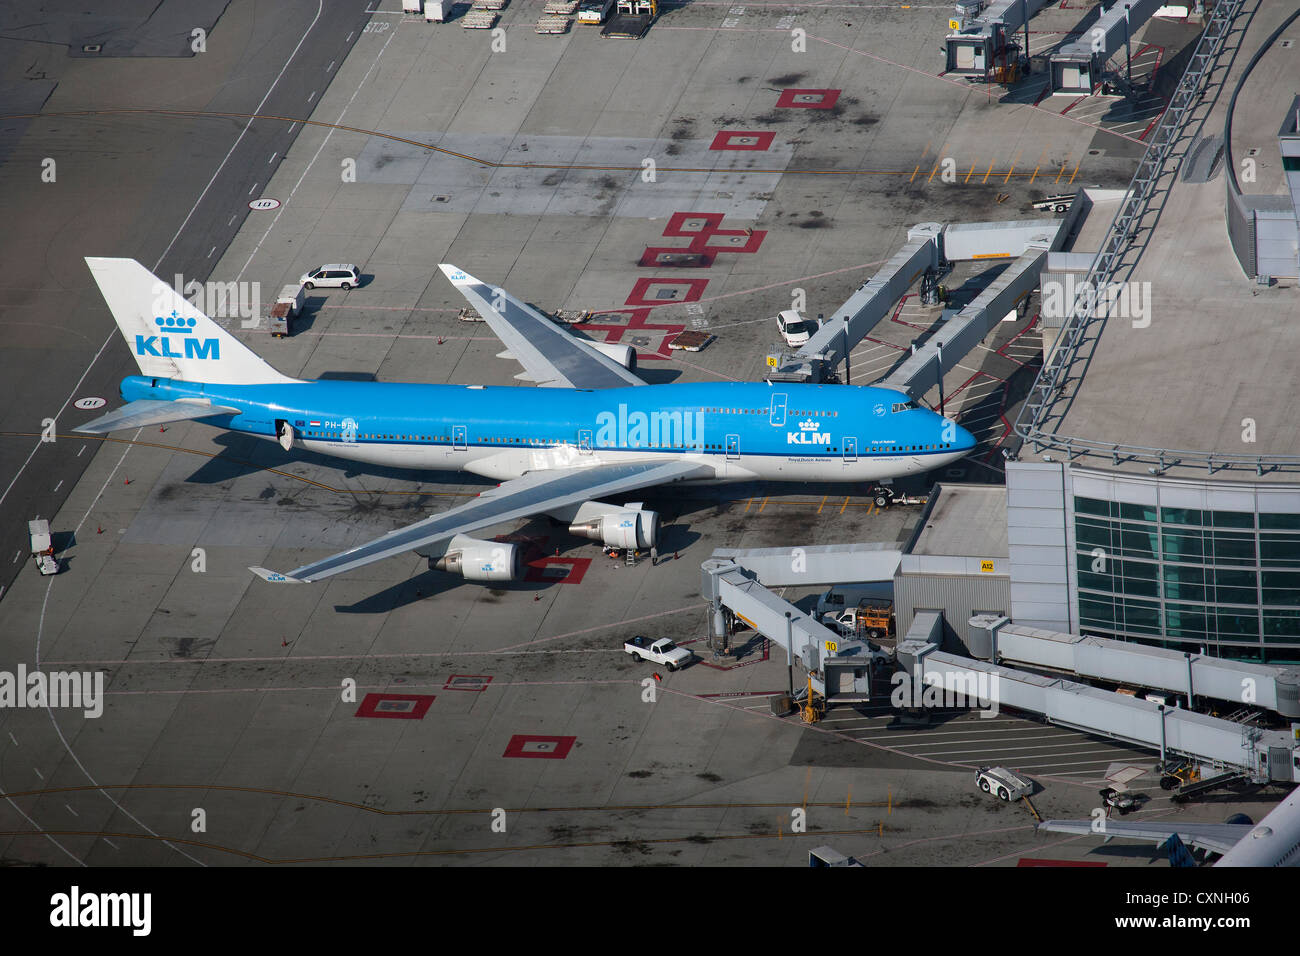 Photographie aérienne 747 de KLM l'aéroport International de San Francisco SFO Banque D'Images